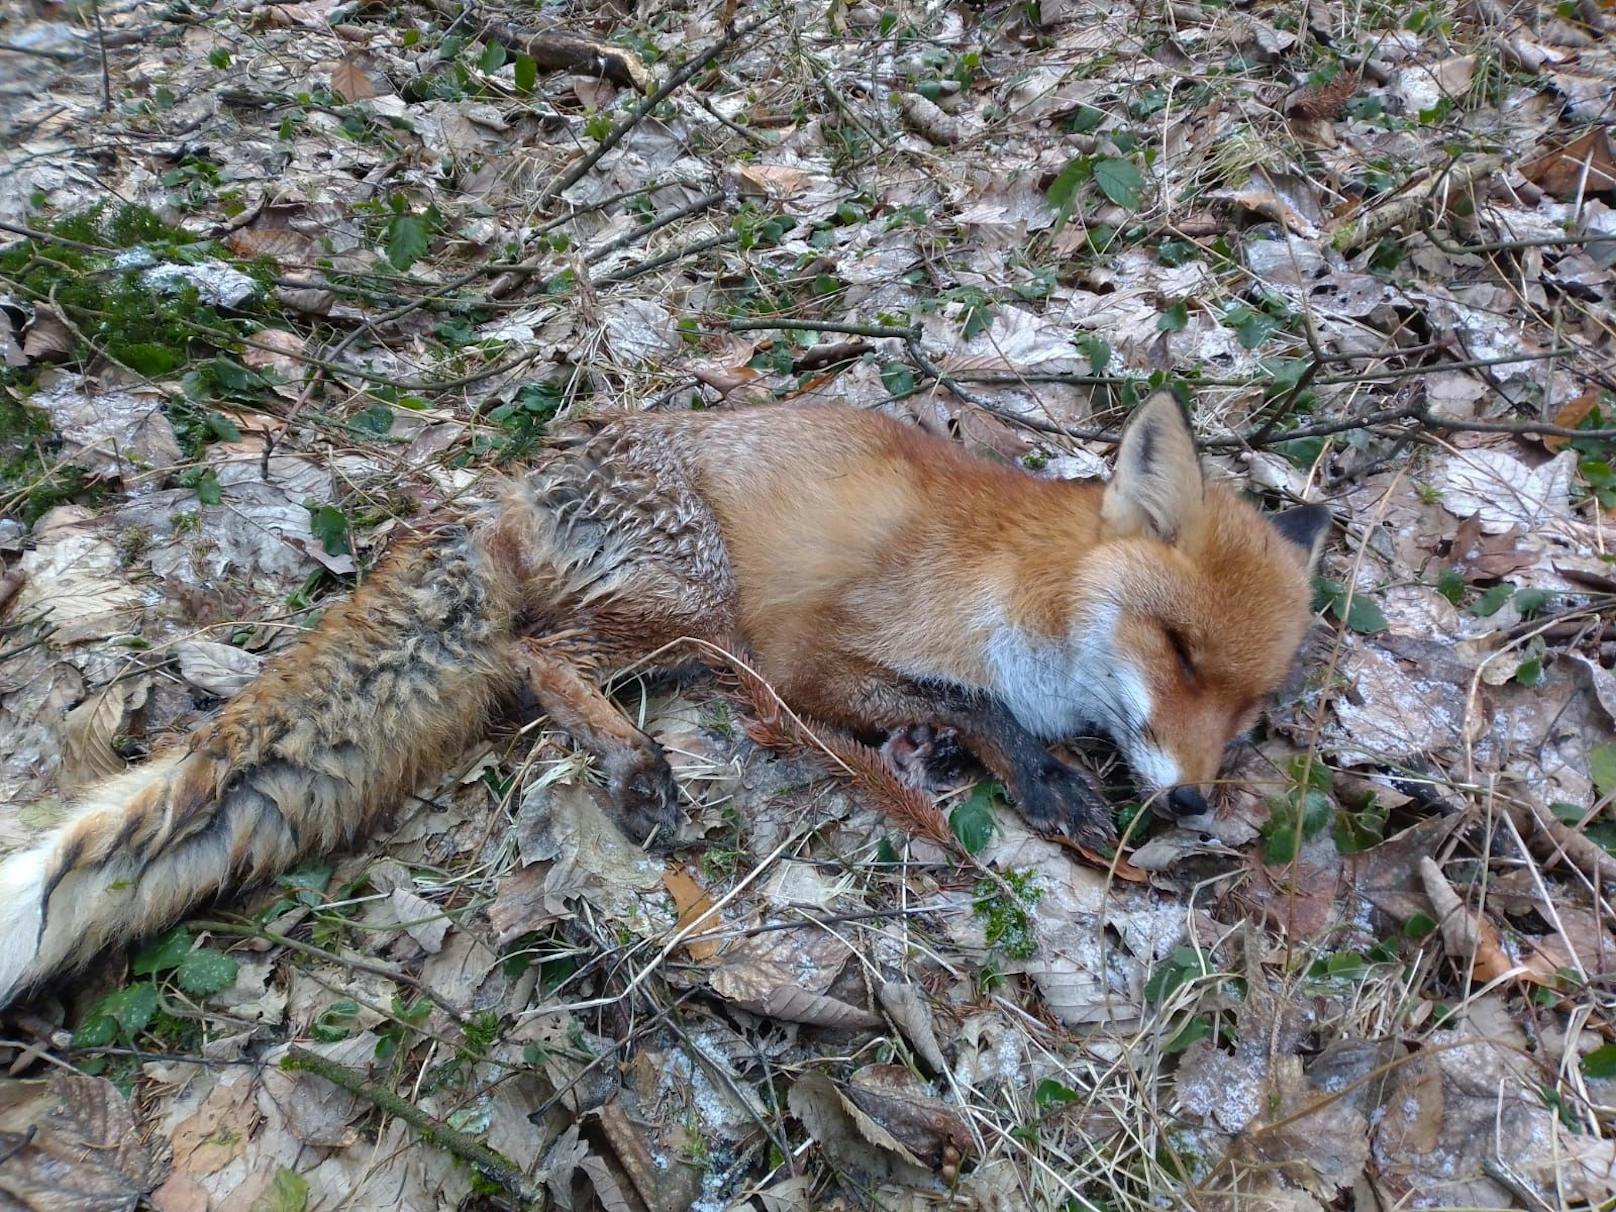 Der Fuchs hatte keine offensichtlichen Wunden.